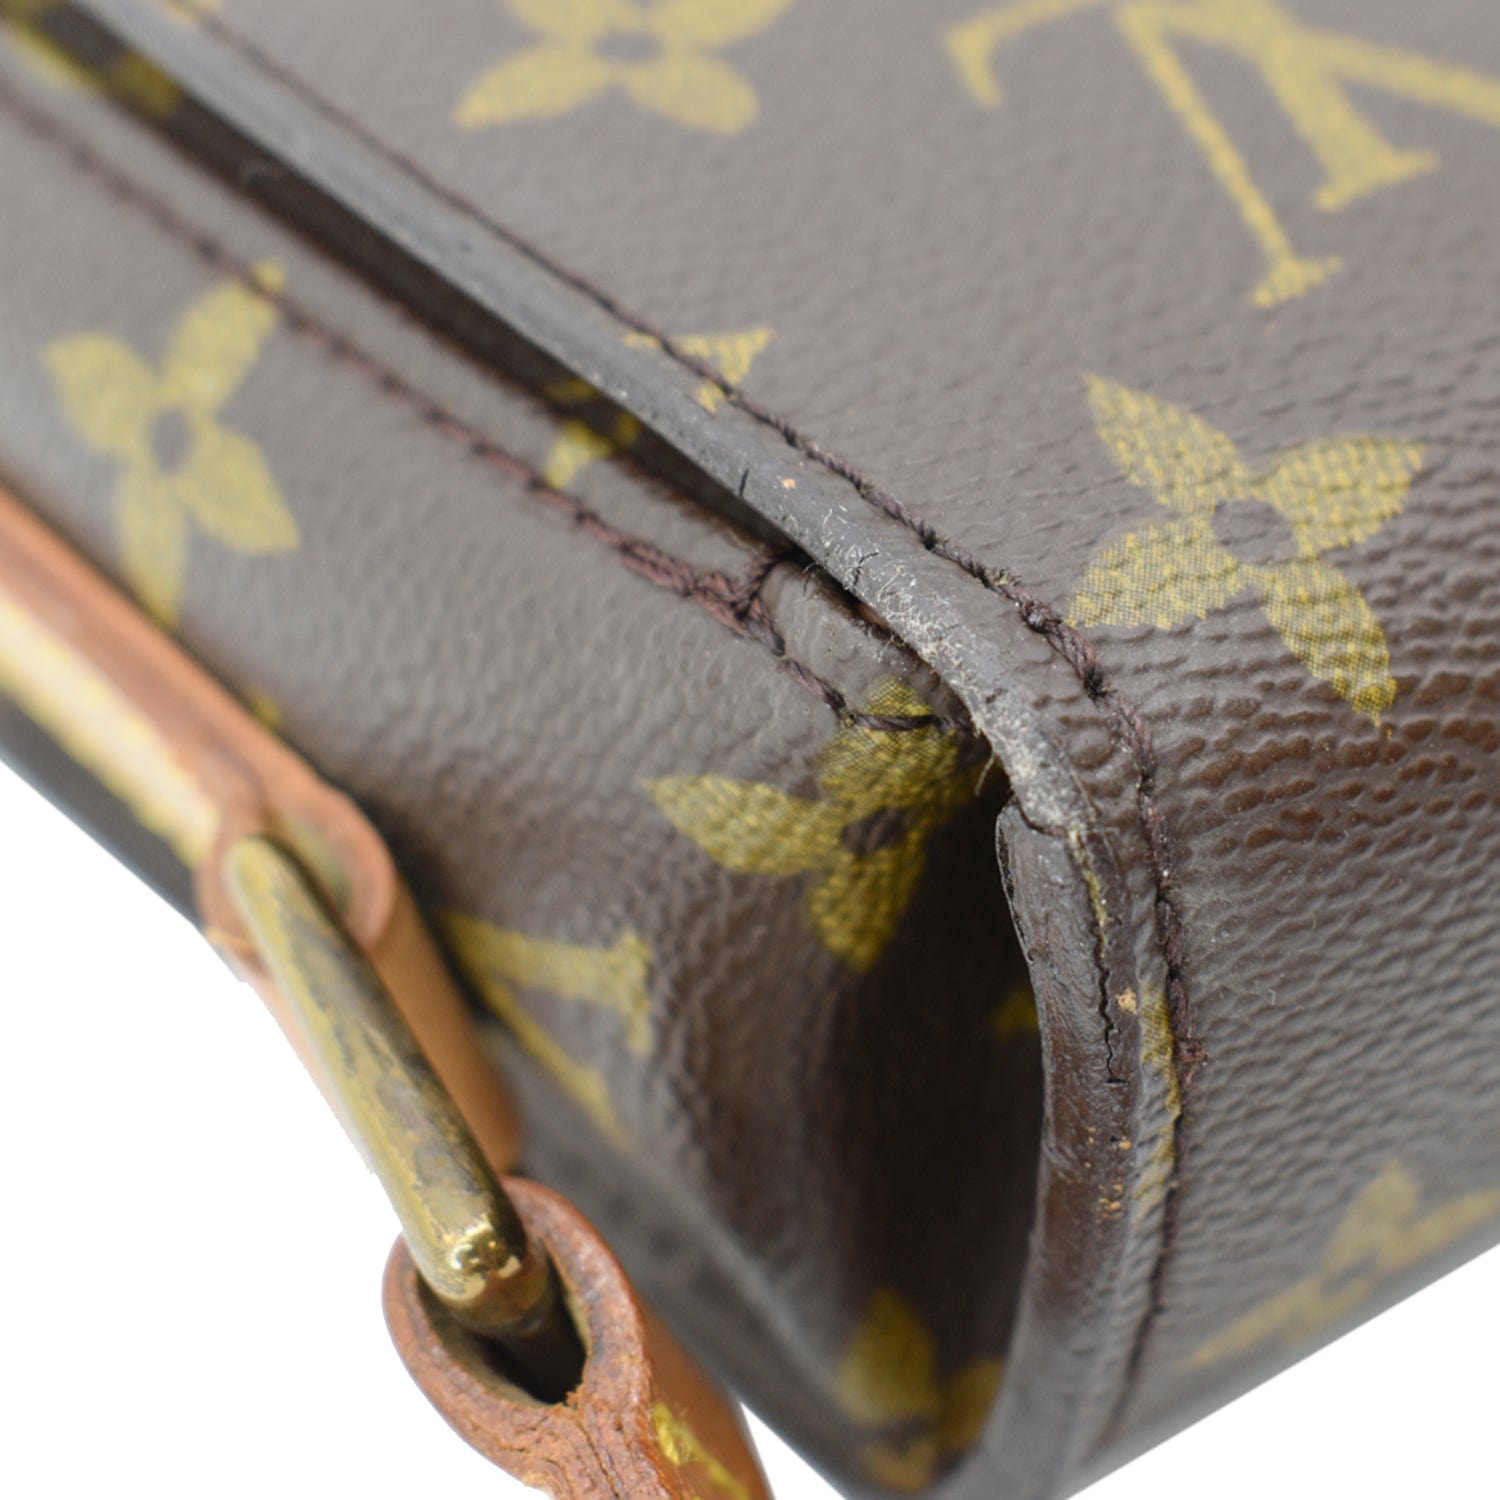 Louis Vuitton St. Cloud GM - Brown Shoulder Bags, Handbags